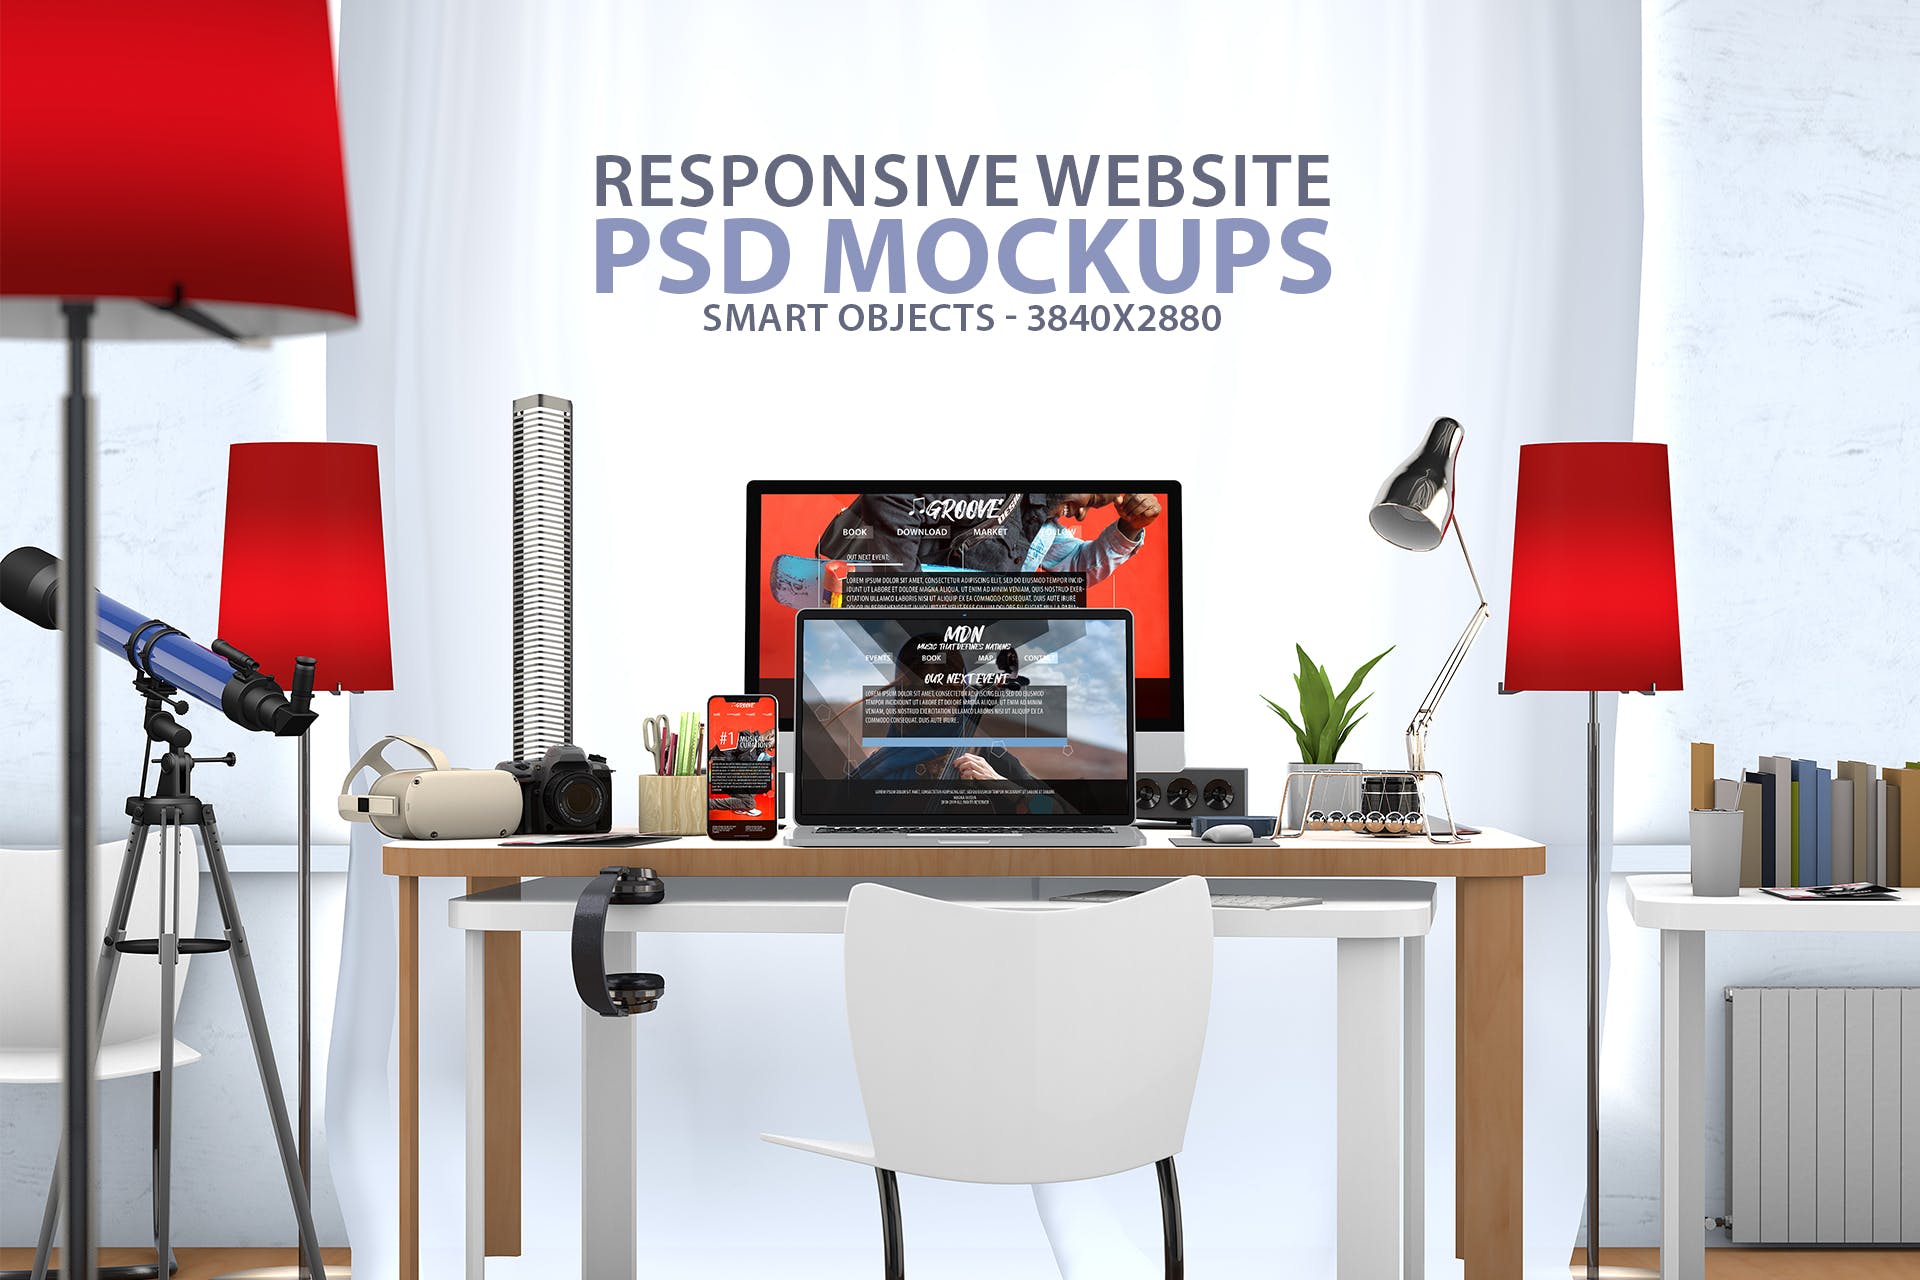 创意办公桌面响应式设计效果图预览样机第一素材精选 Responsive Website PSD Mock-up Desk插图